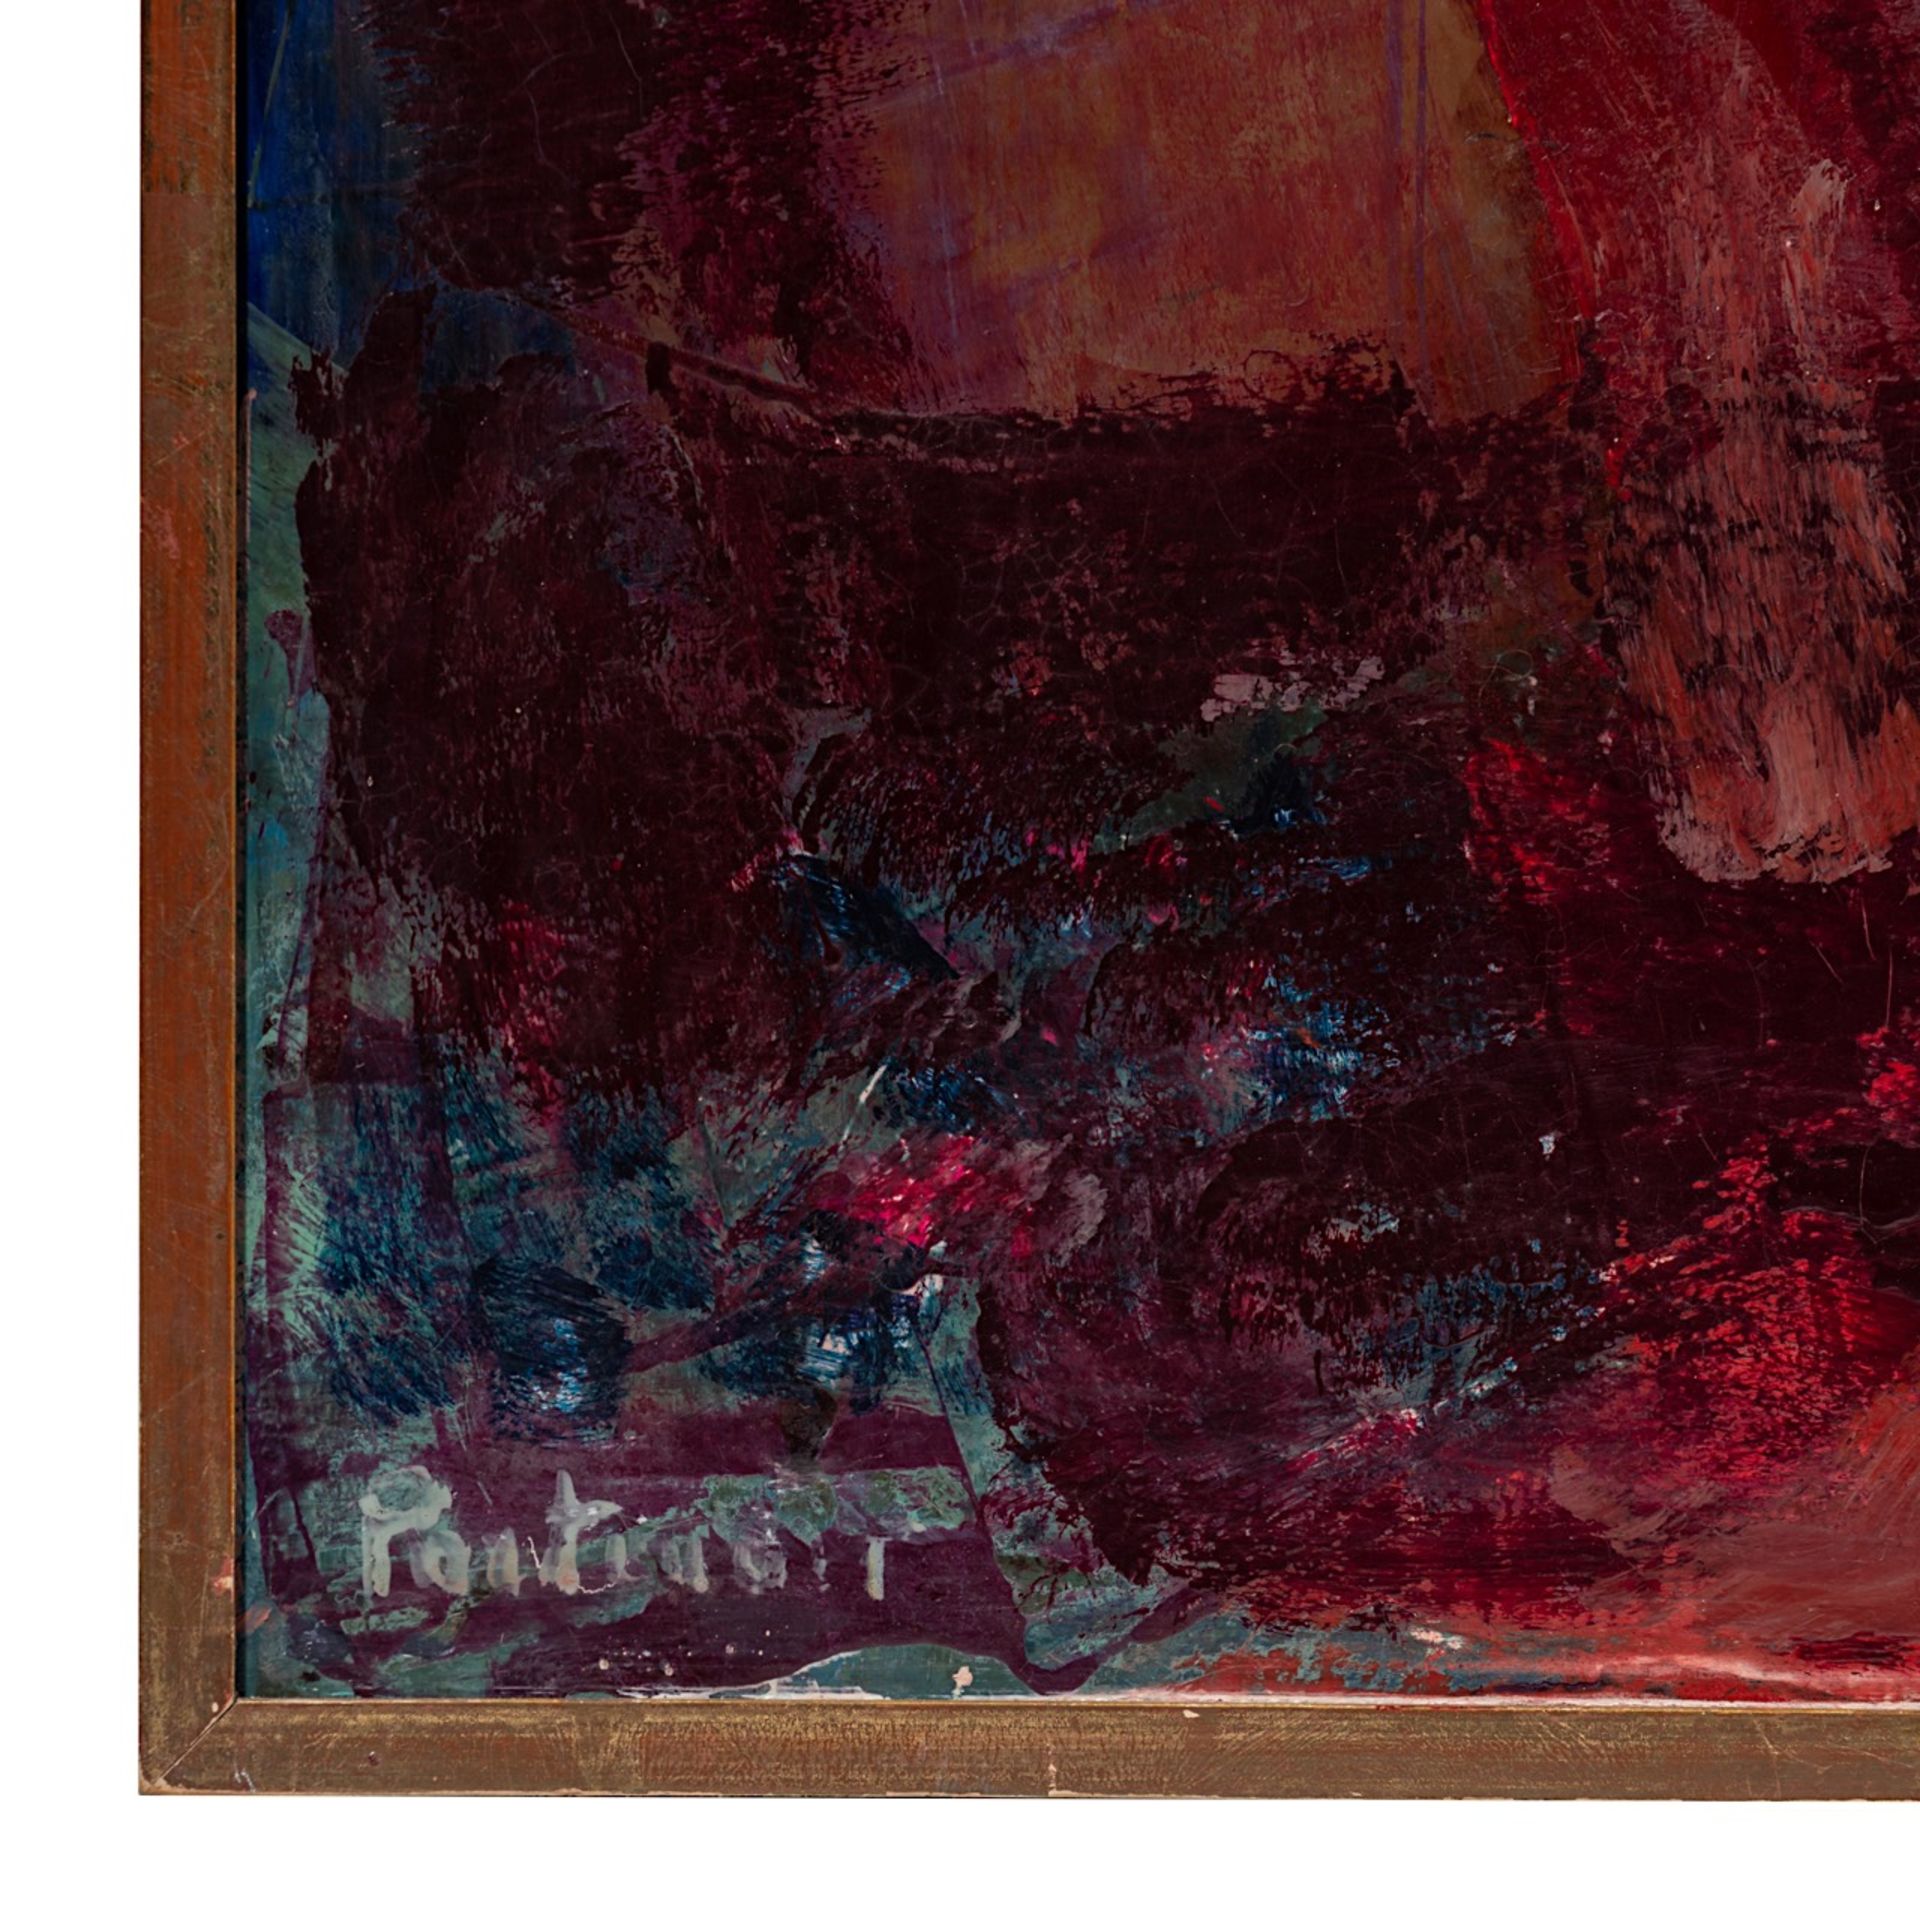 Jeanne Portenart (1911-1992), 'Le Magicien', 1958, oil on board 100 x 70 cm. (39.3 x 27.5 in.) - Image 4 of 7